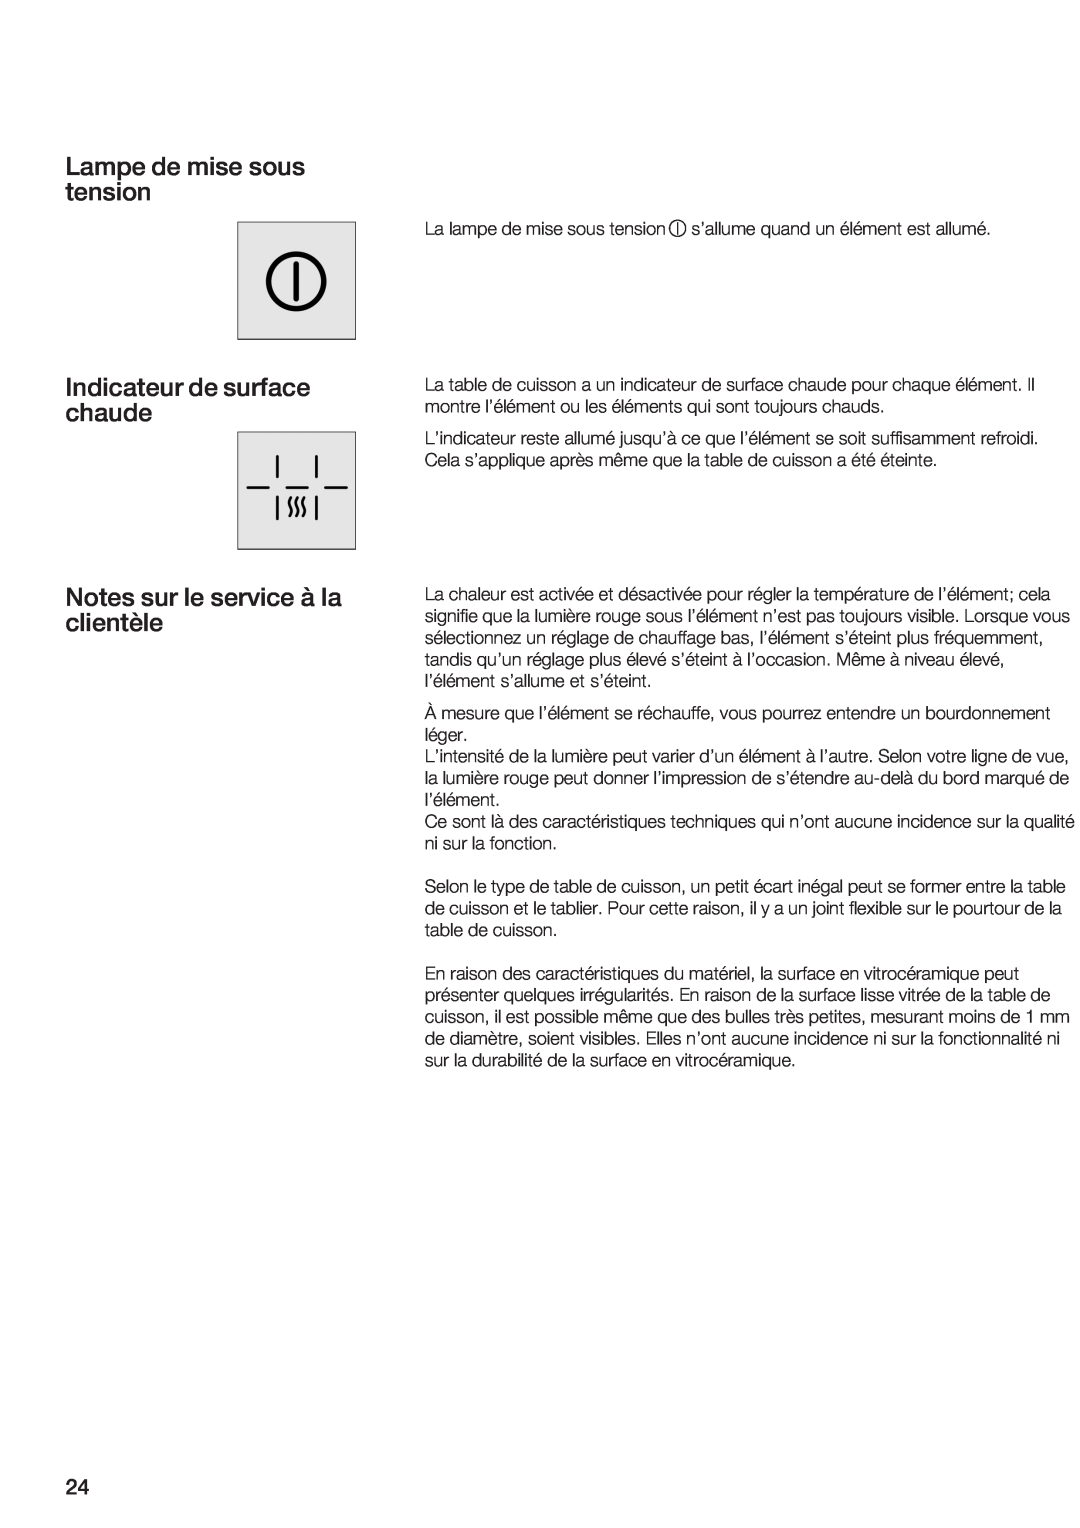 Bosch Appliances NEM 75 Lampe de mise sous tension, Indicateur de surface chaude, Notes sur le service à la clientèle 